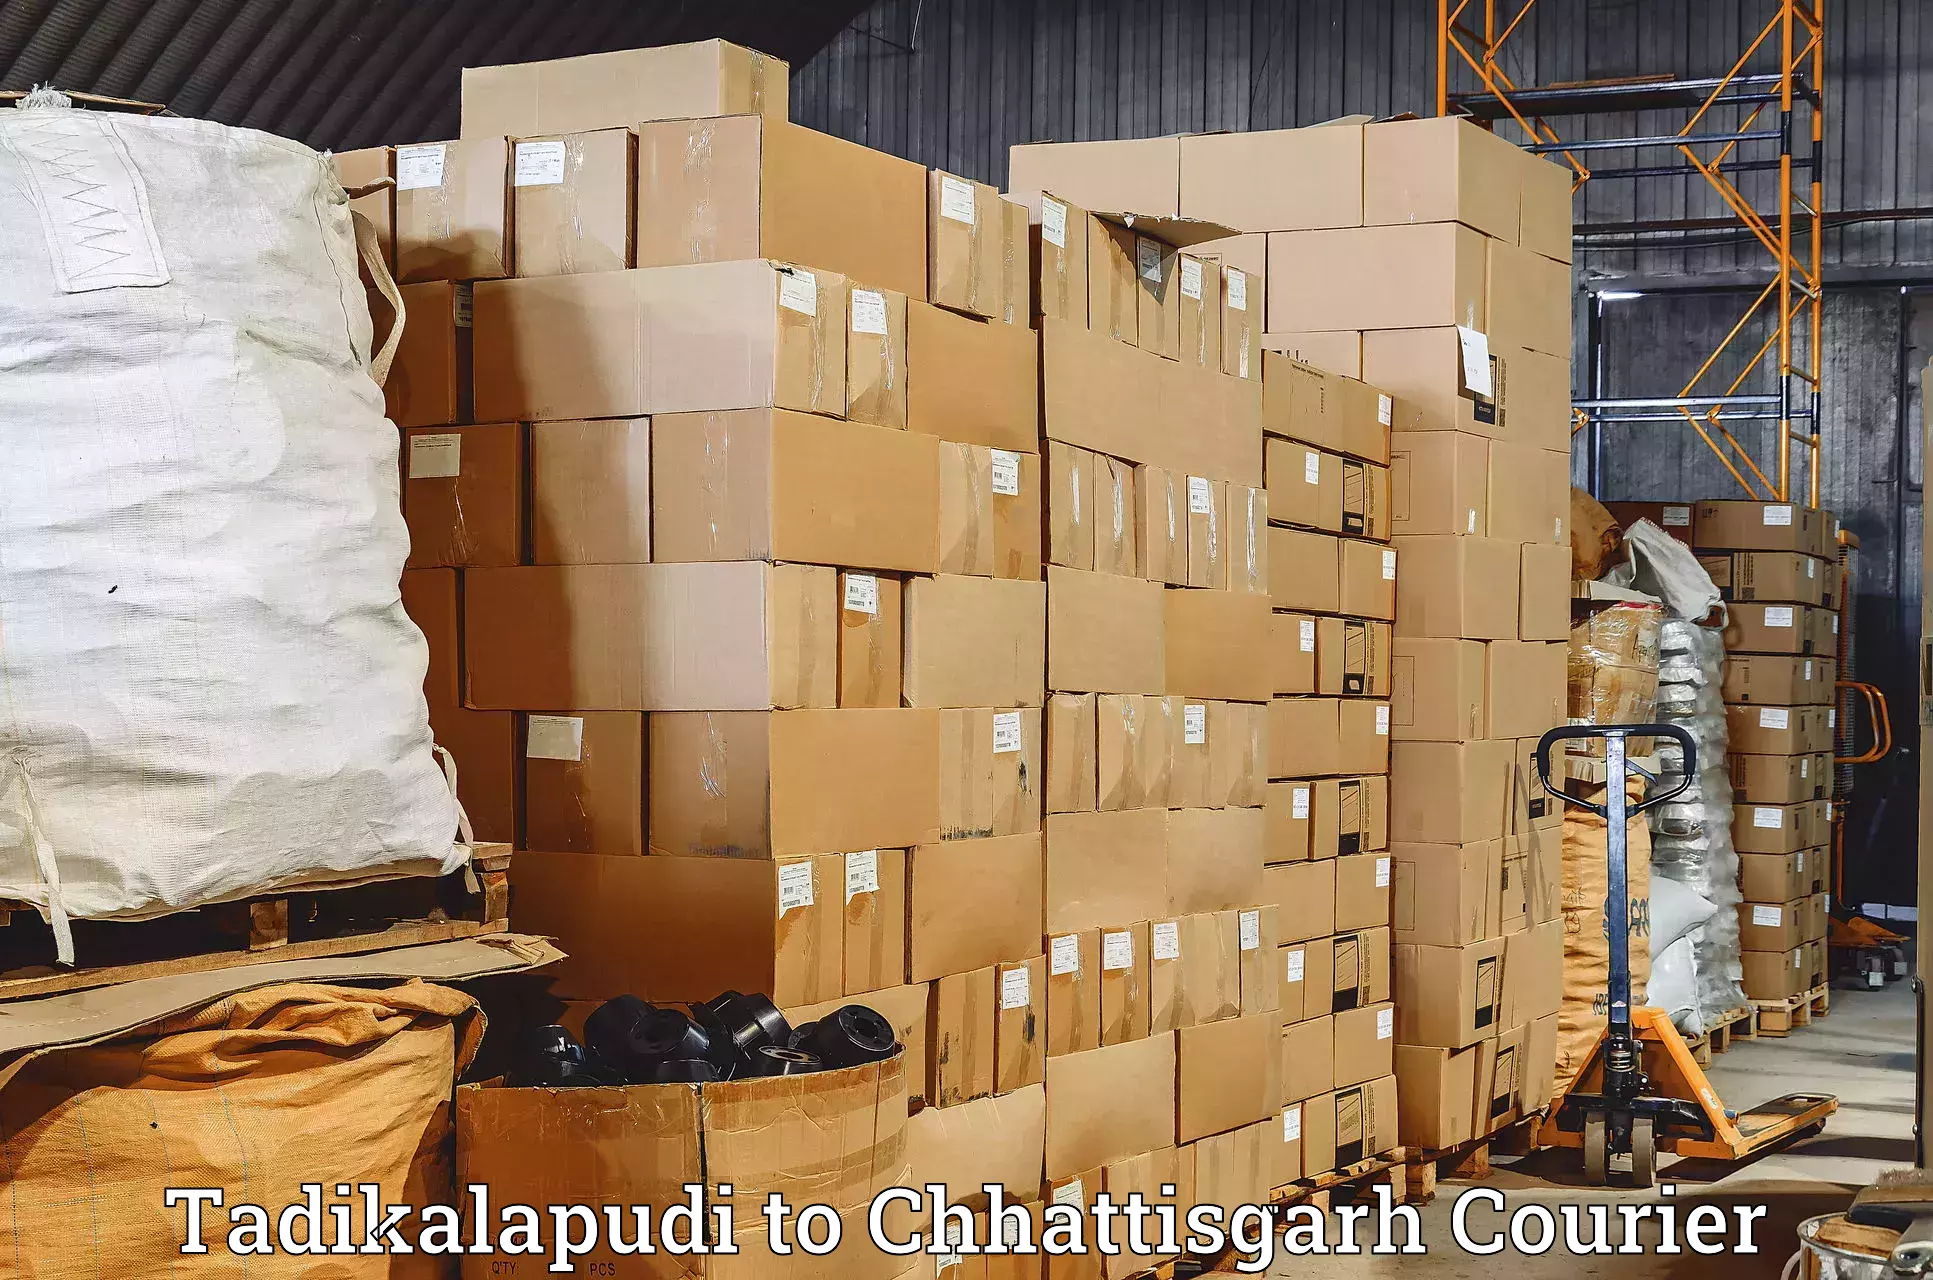 High-capacity parcel service Tadikalapudi to Korba